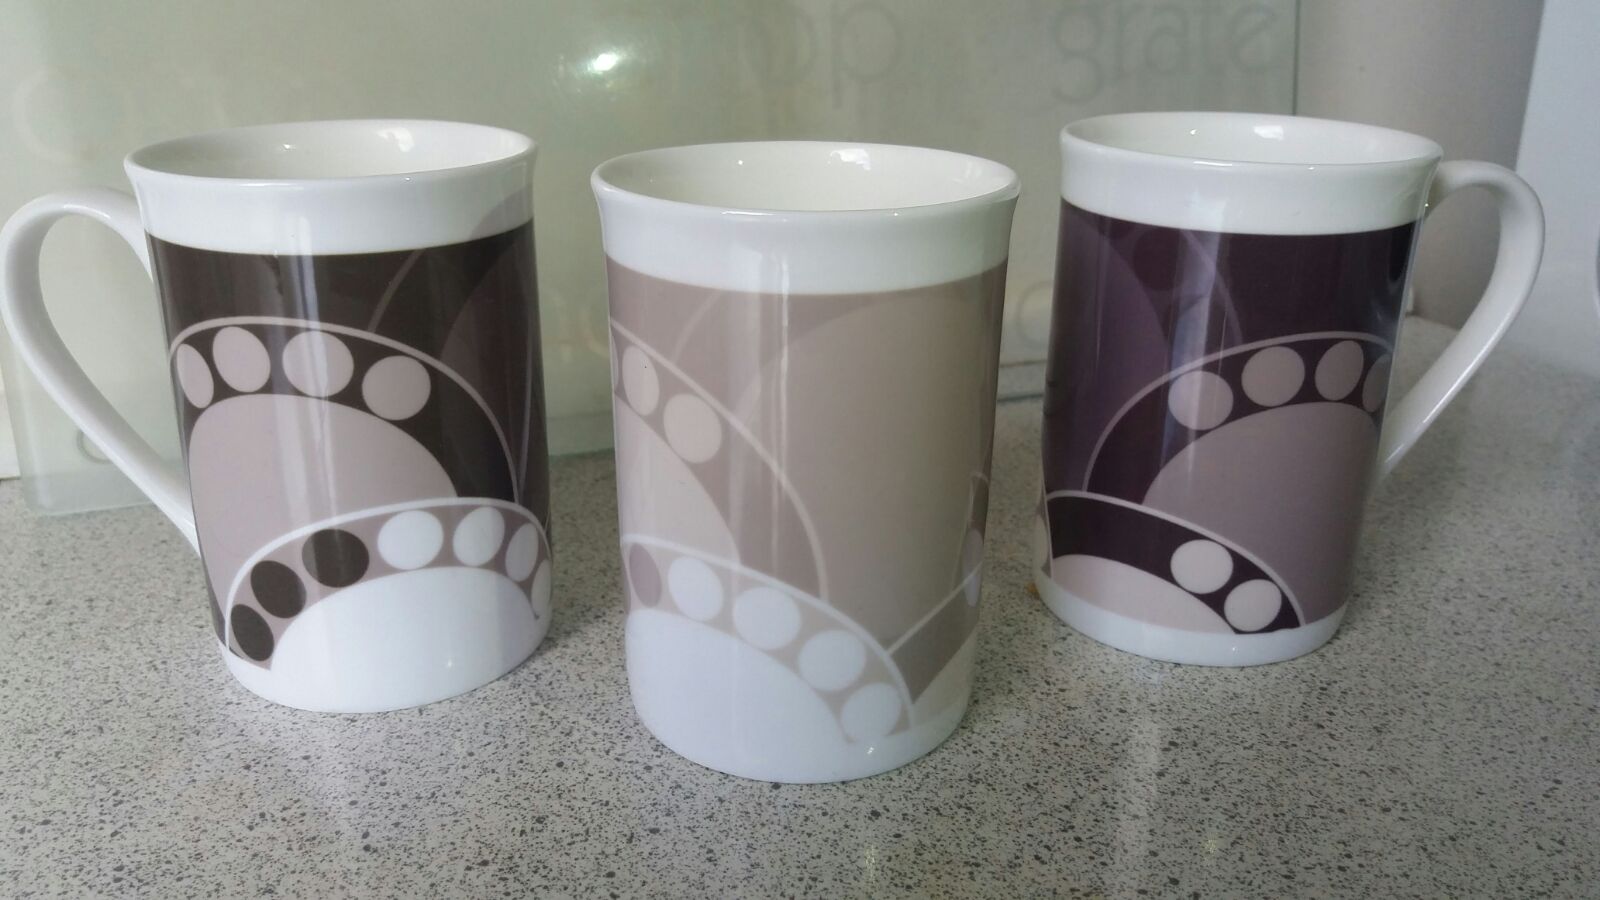 Elegant Porcelain Mugs With Fern Leaves Design